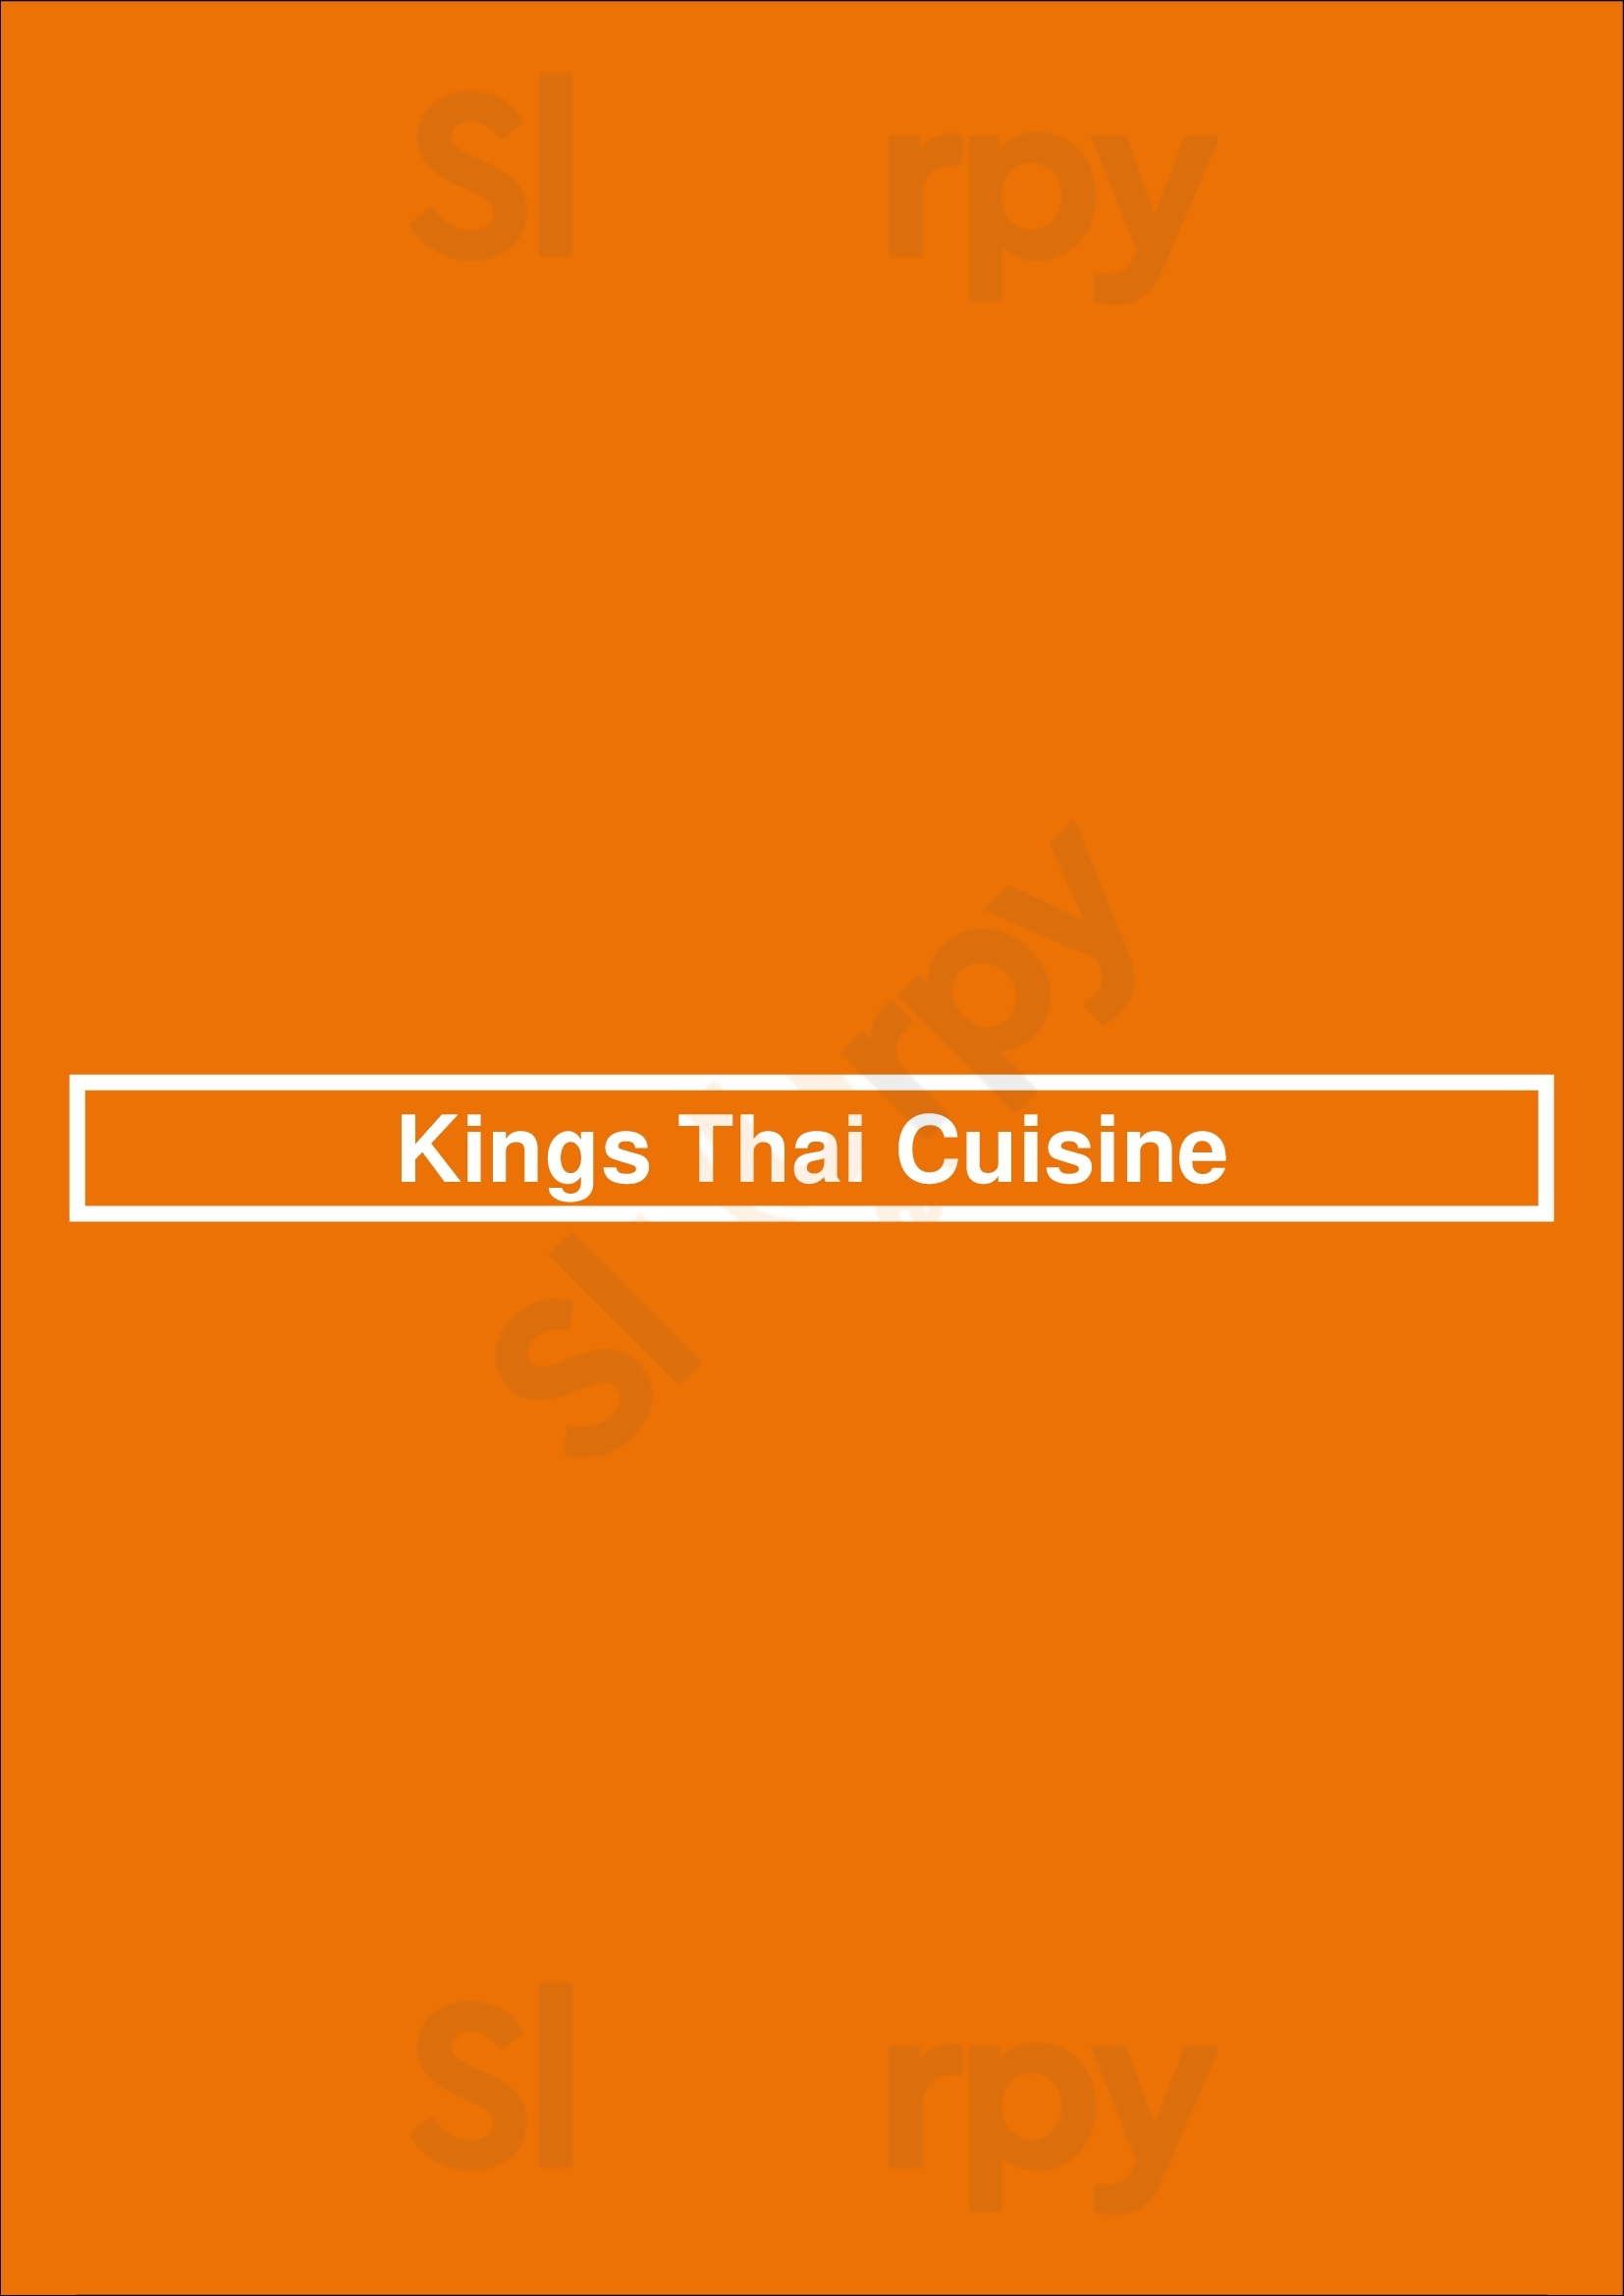 Kings Thai Cuisine Fridley Menu - 1